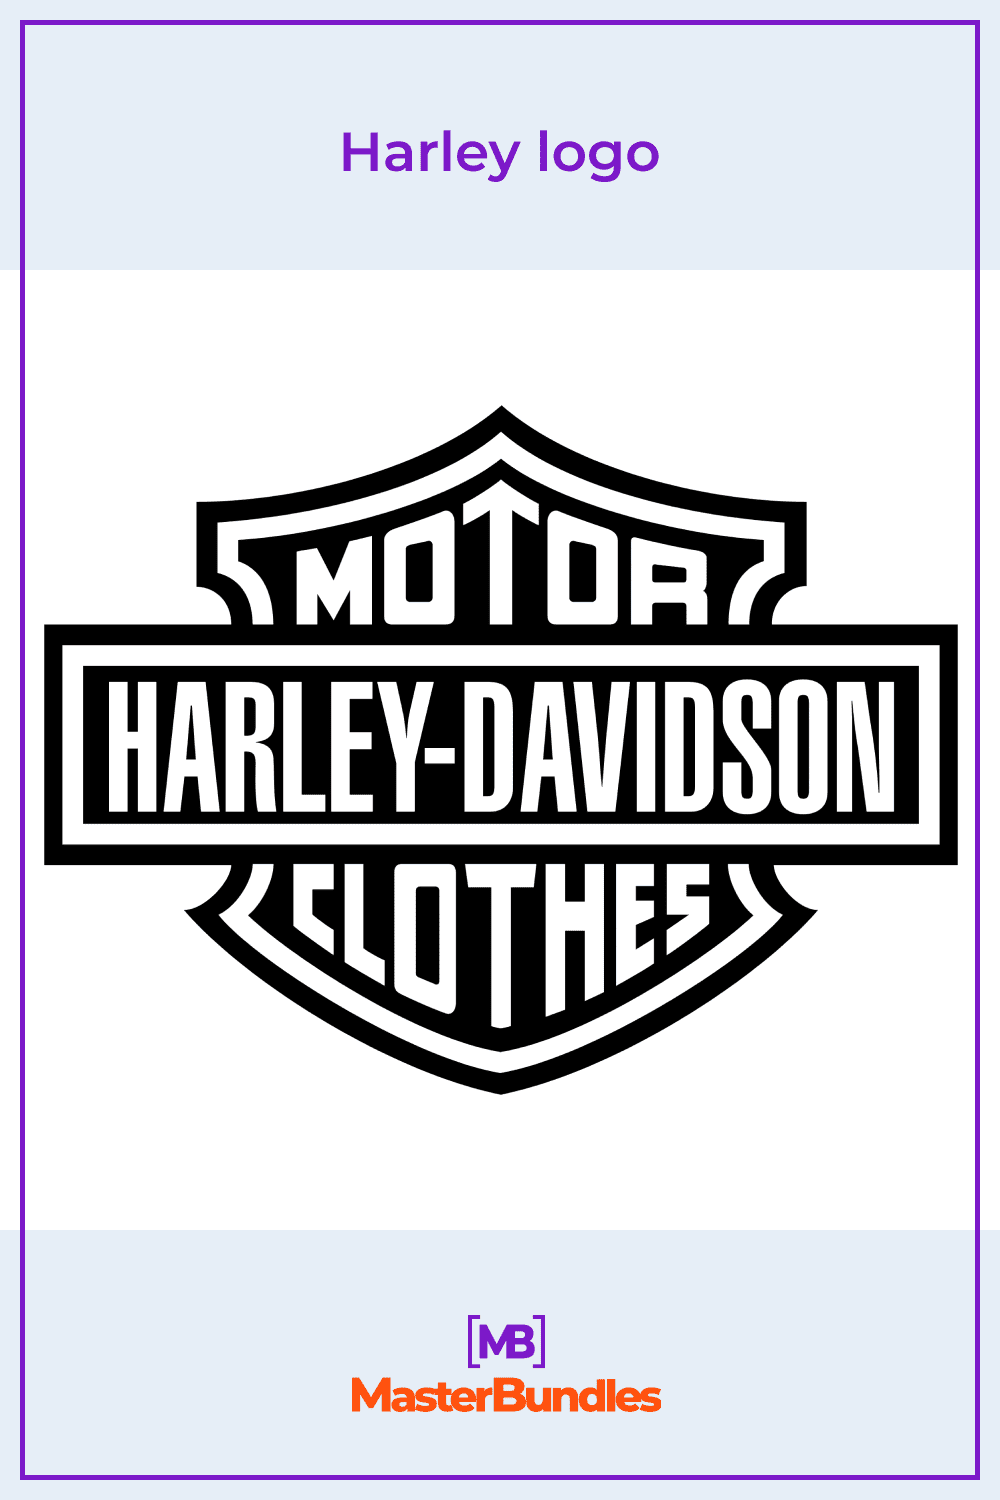 Harley logo.